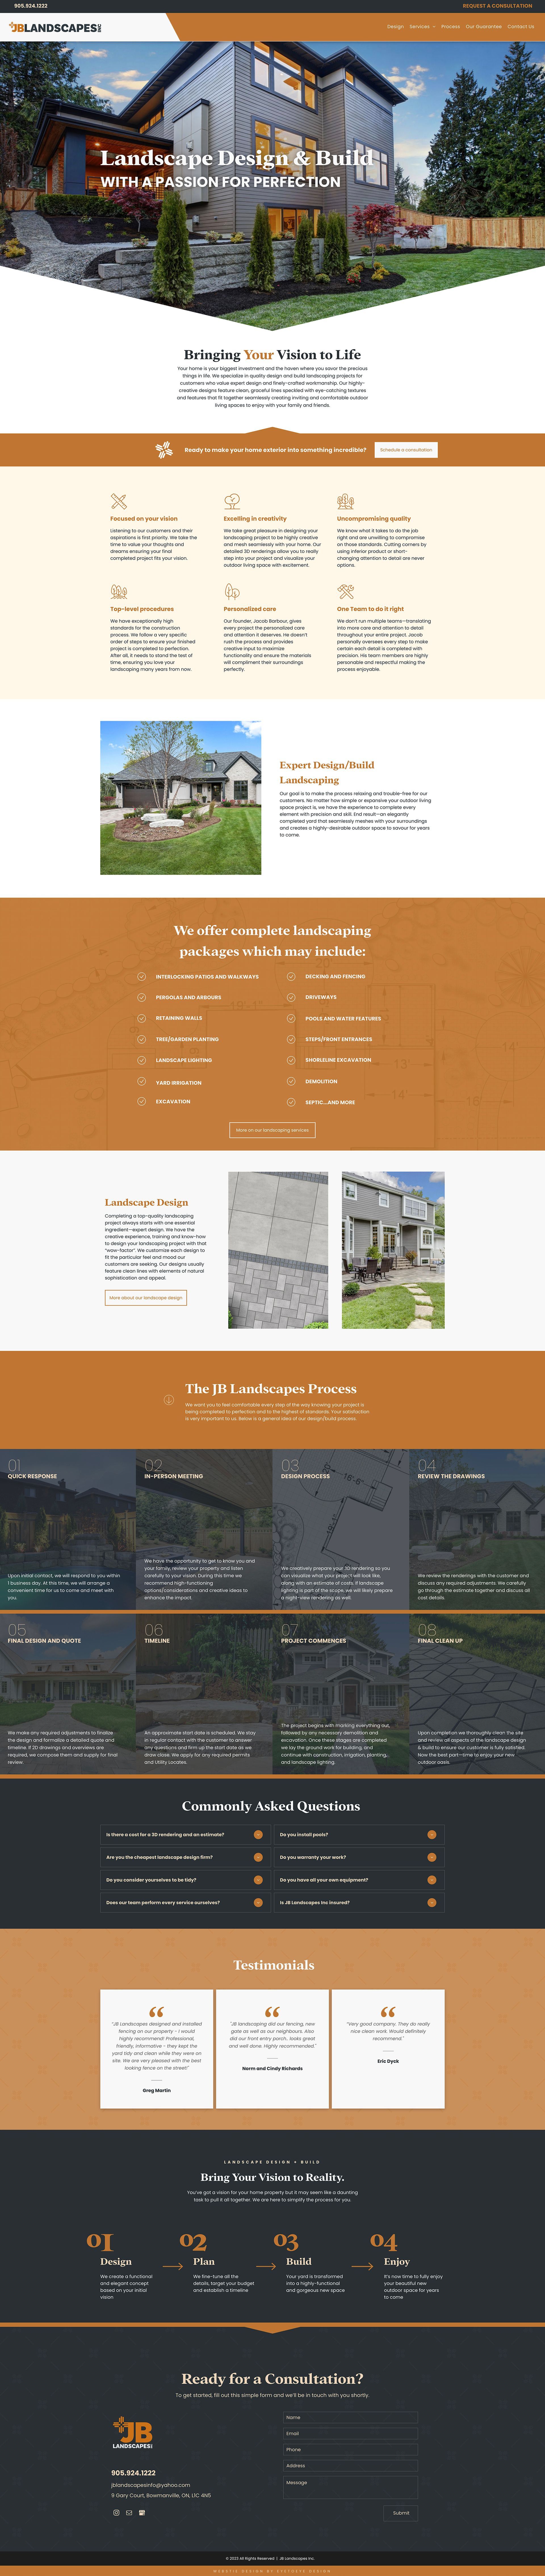 JB Landscapes website design mockup